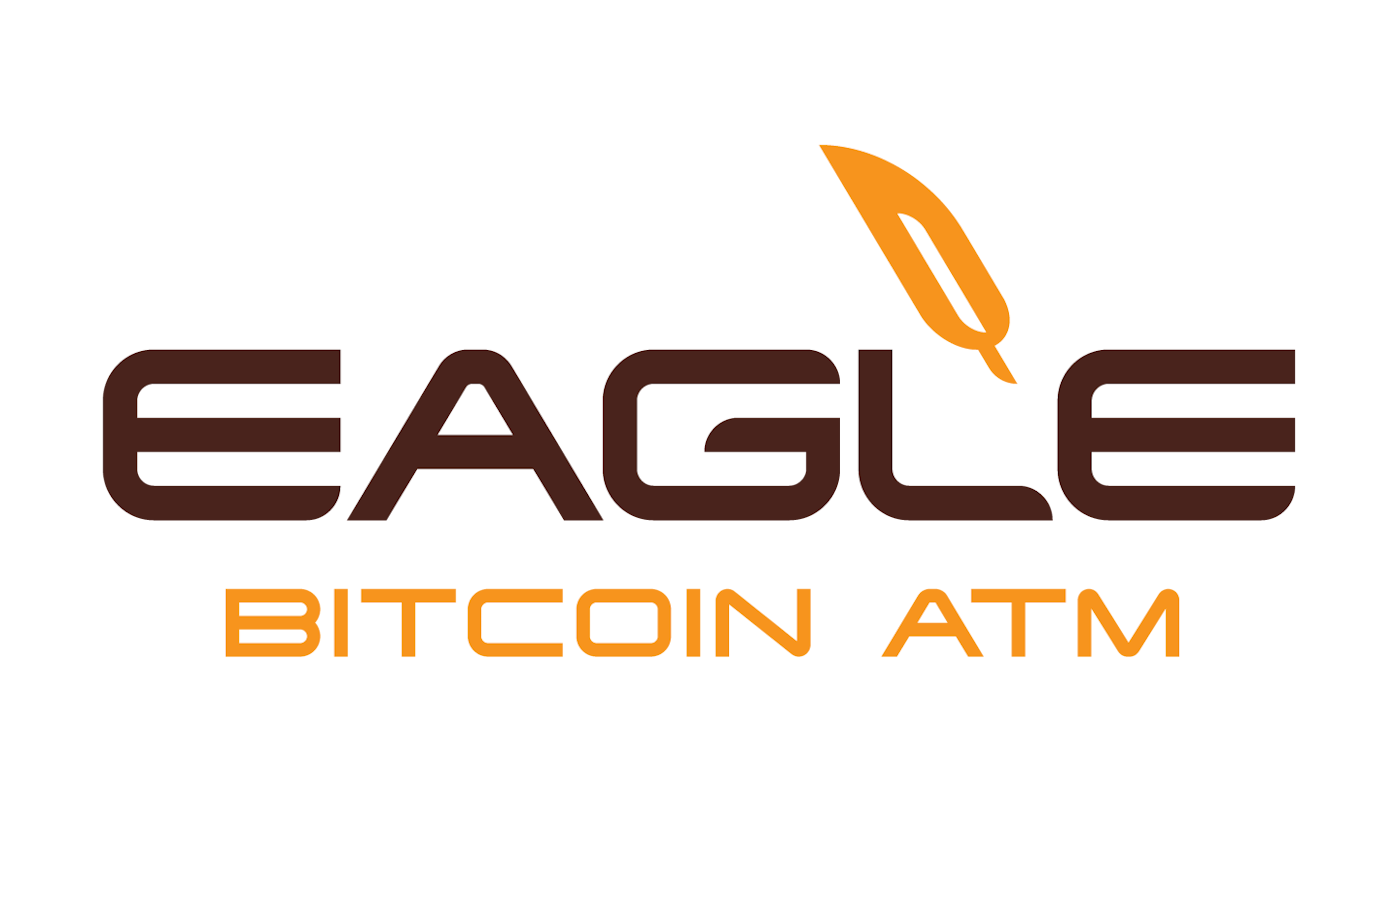 Eagle Bitcoin ATM logo